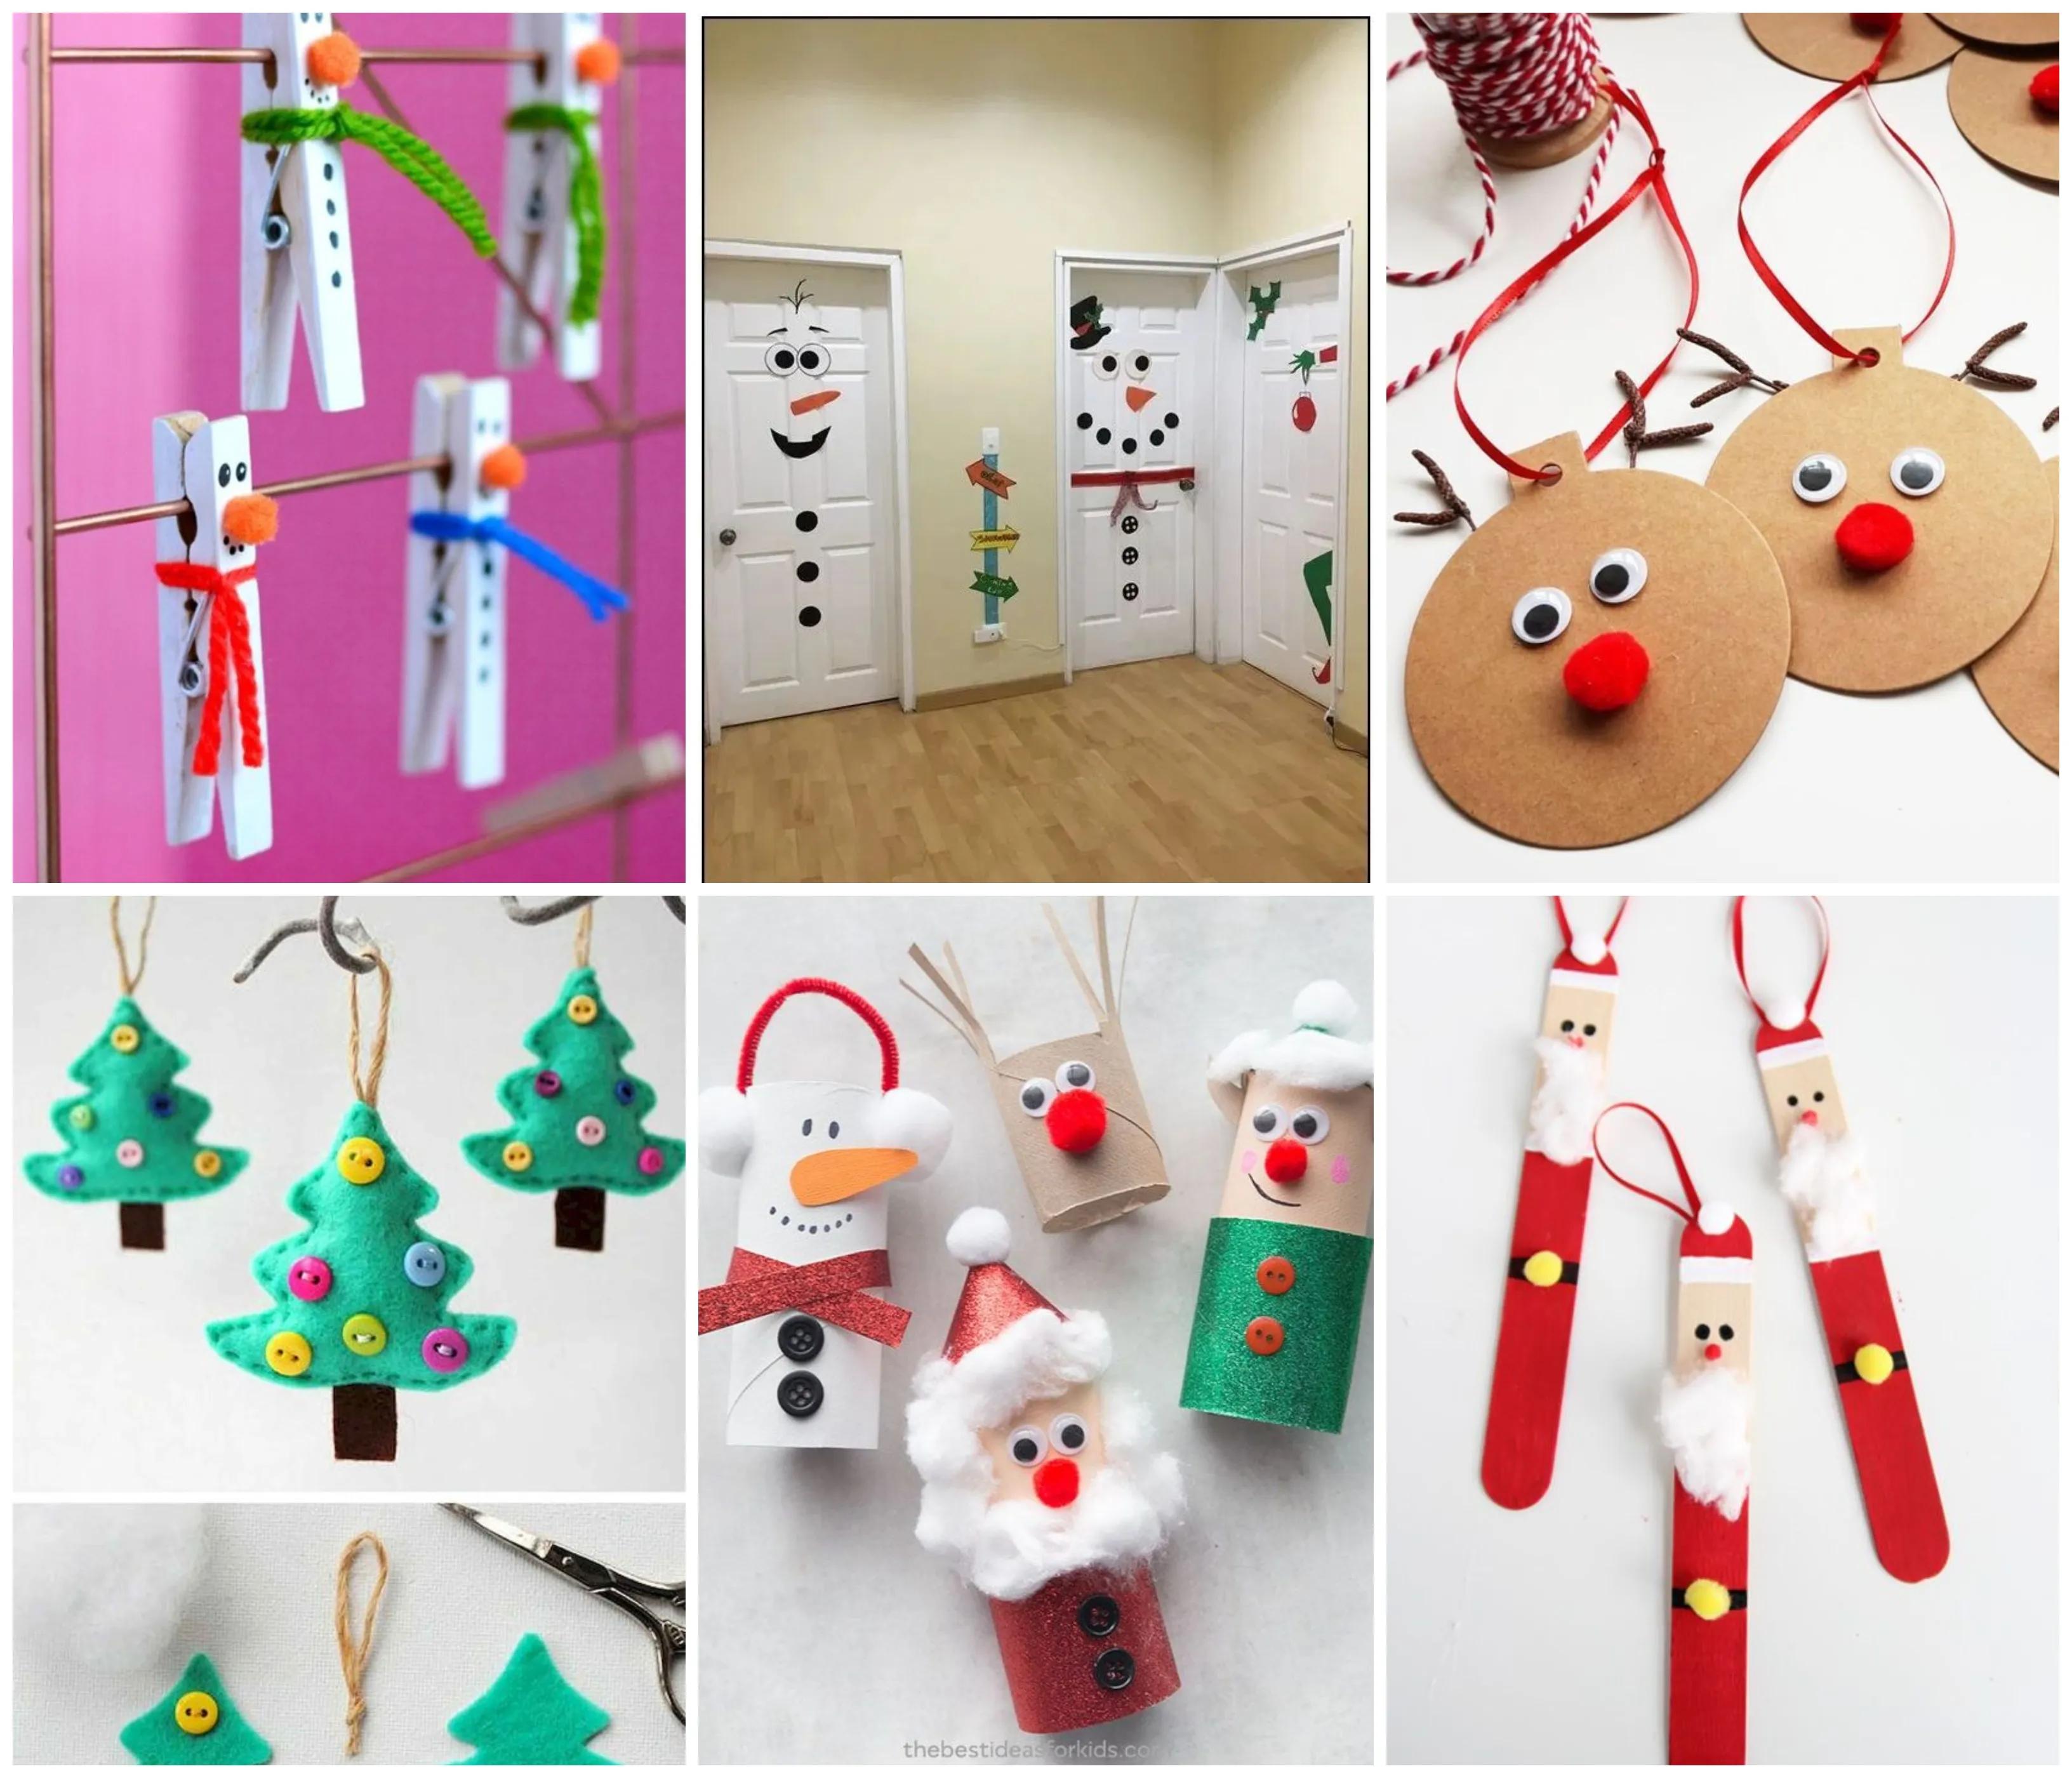 Tolle kreative Weihnachtsbasteleien für Kinder :) - nettetipps.de